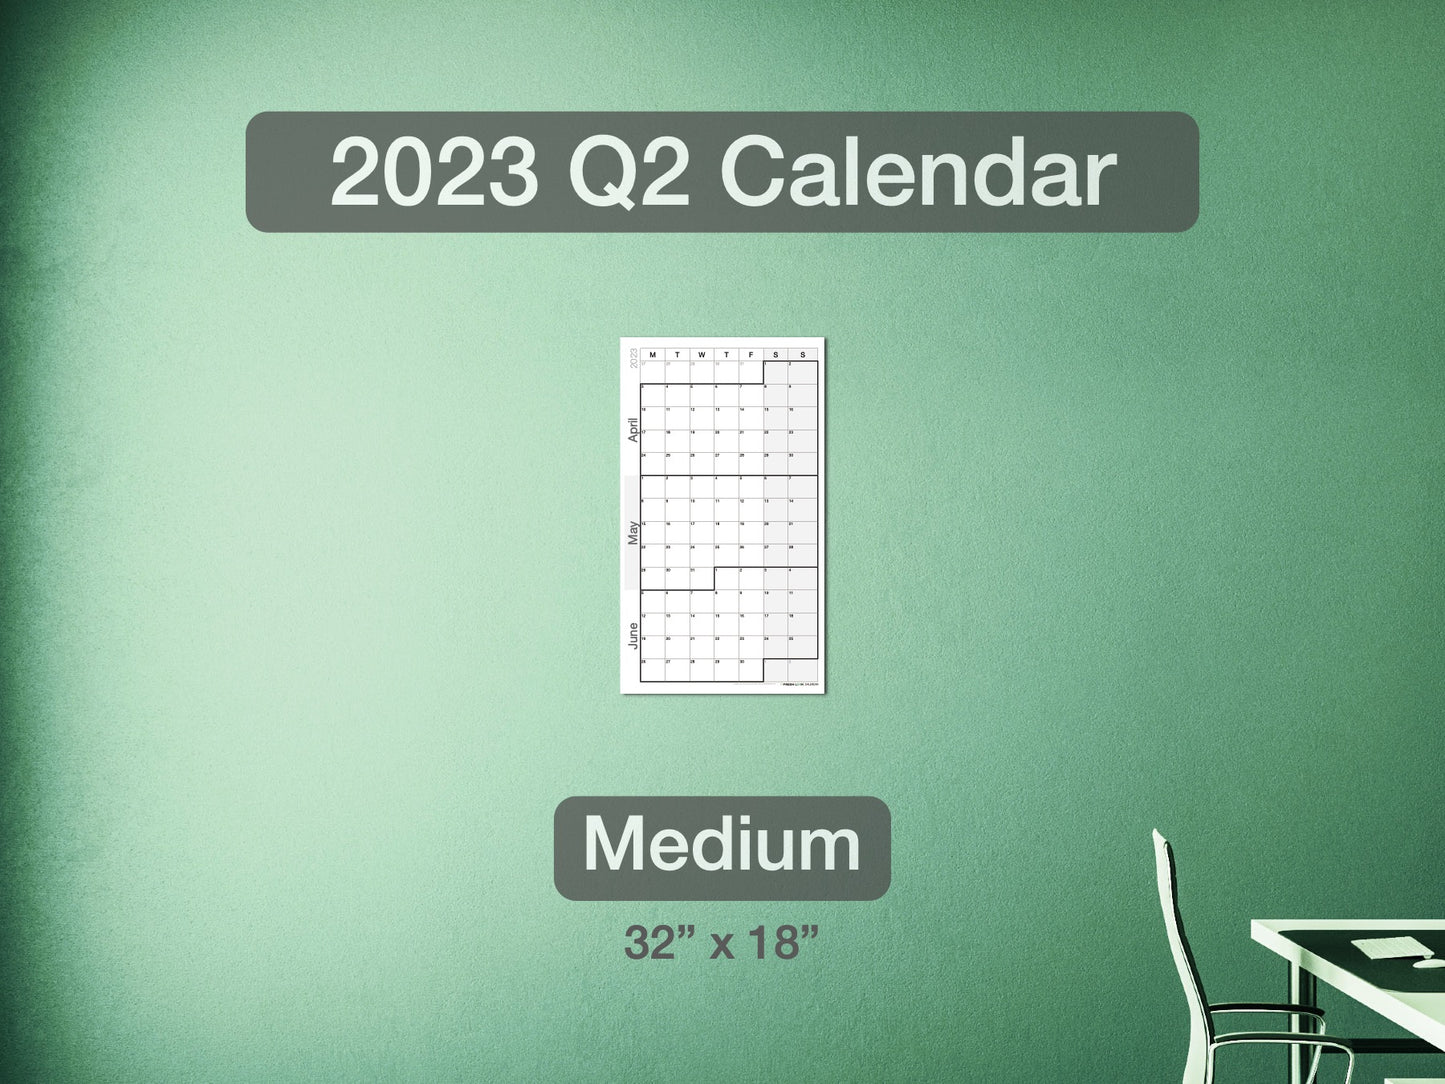 2023 Q2 Calendar Medium